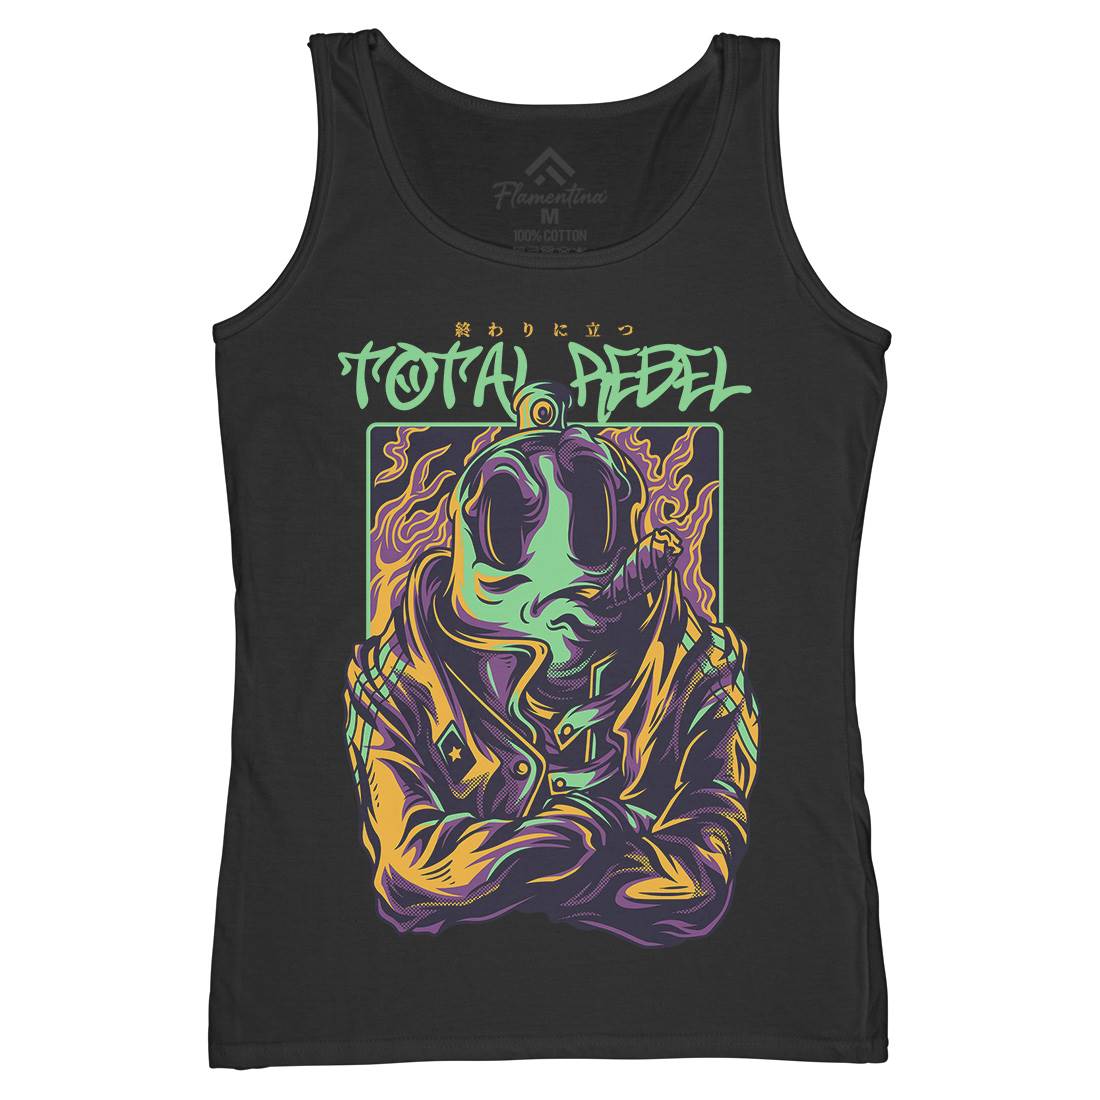 Total Rebel Womens Organic Tank Top Vest Graffiti D863